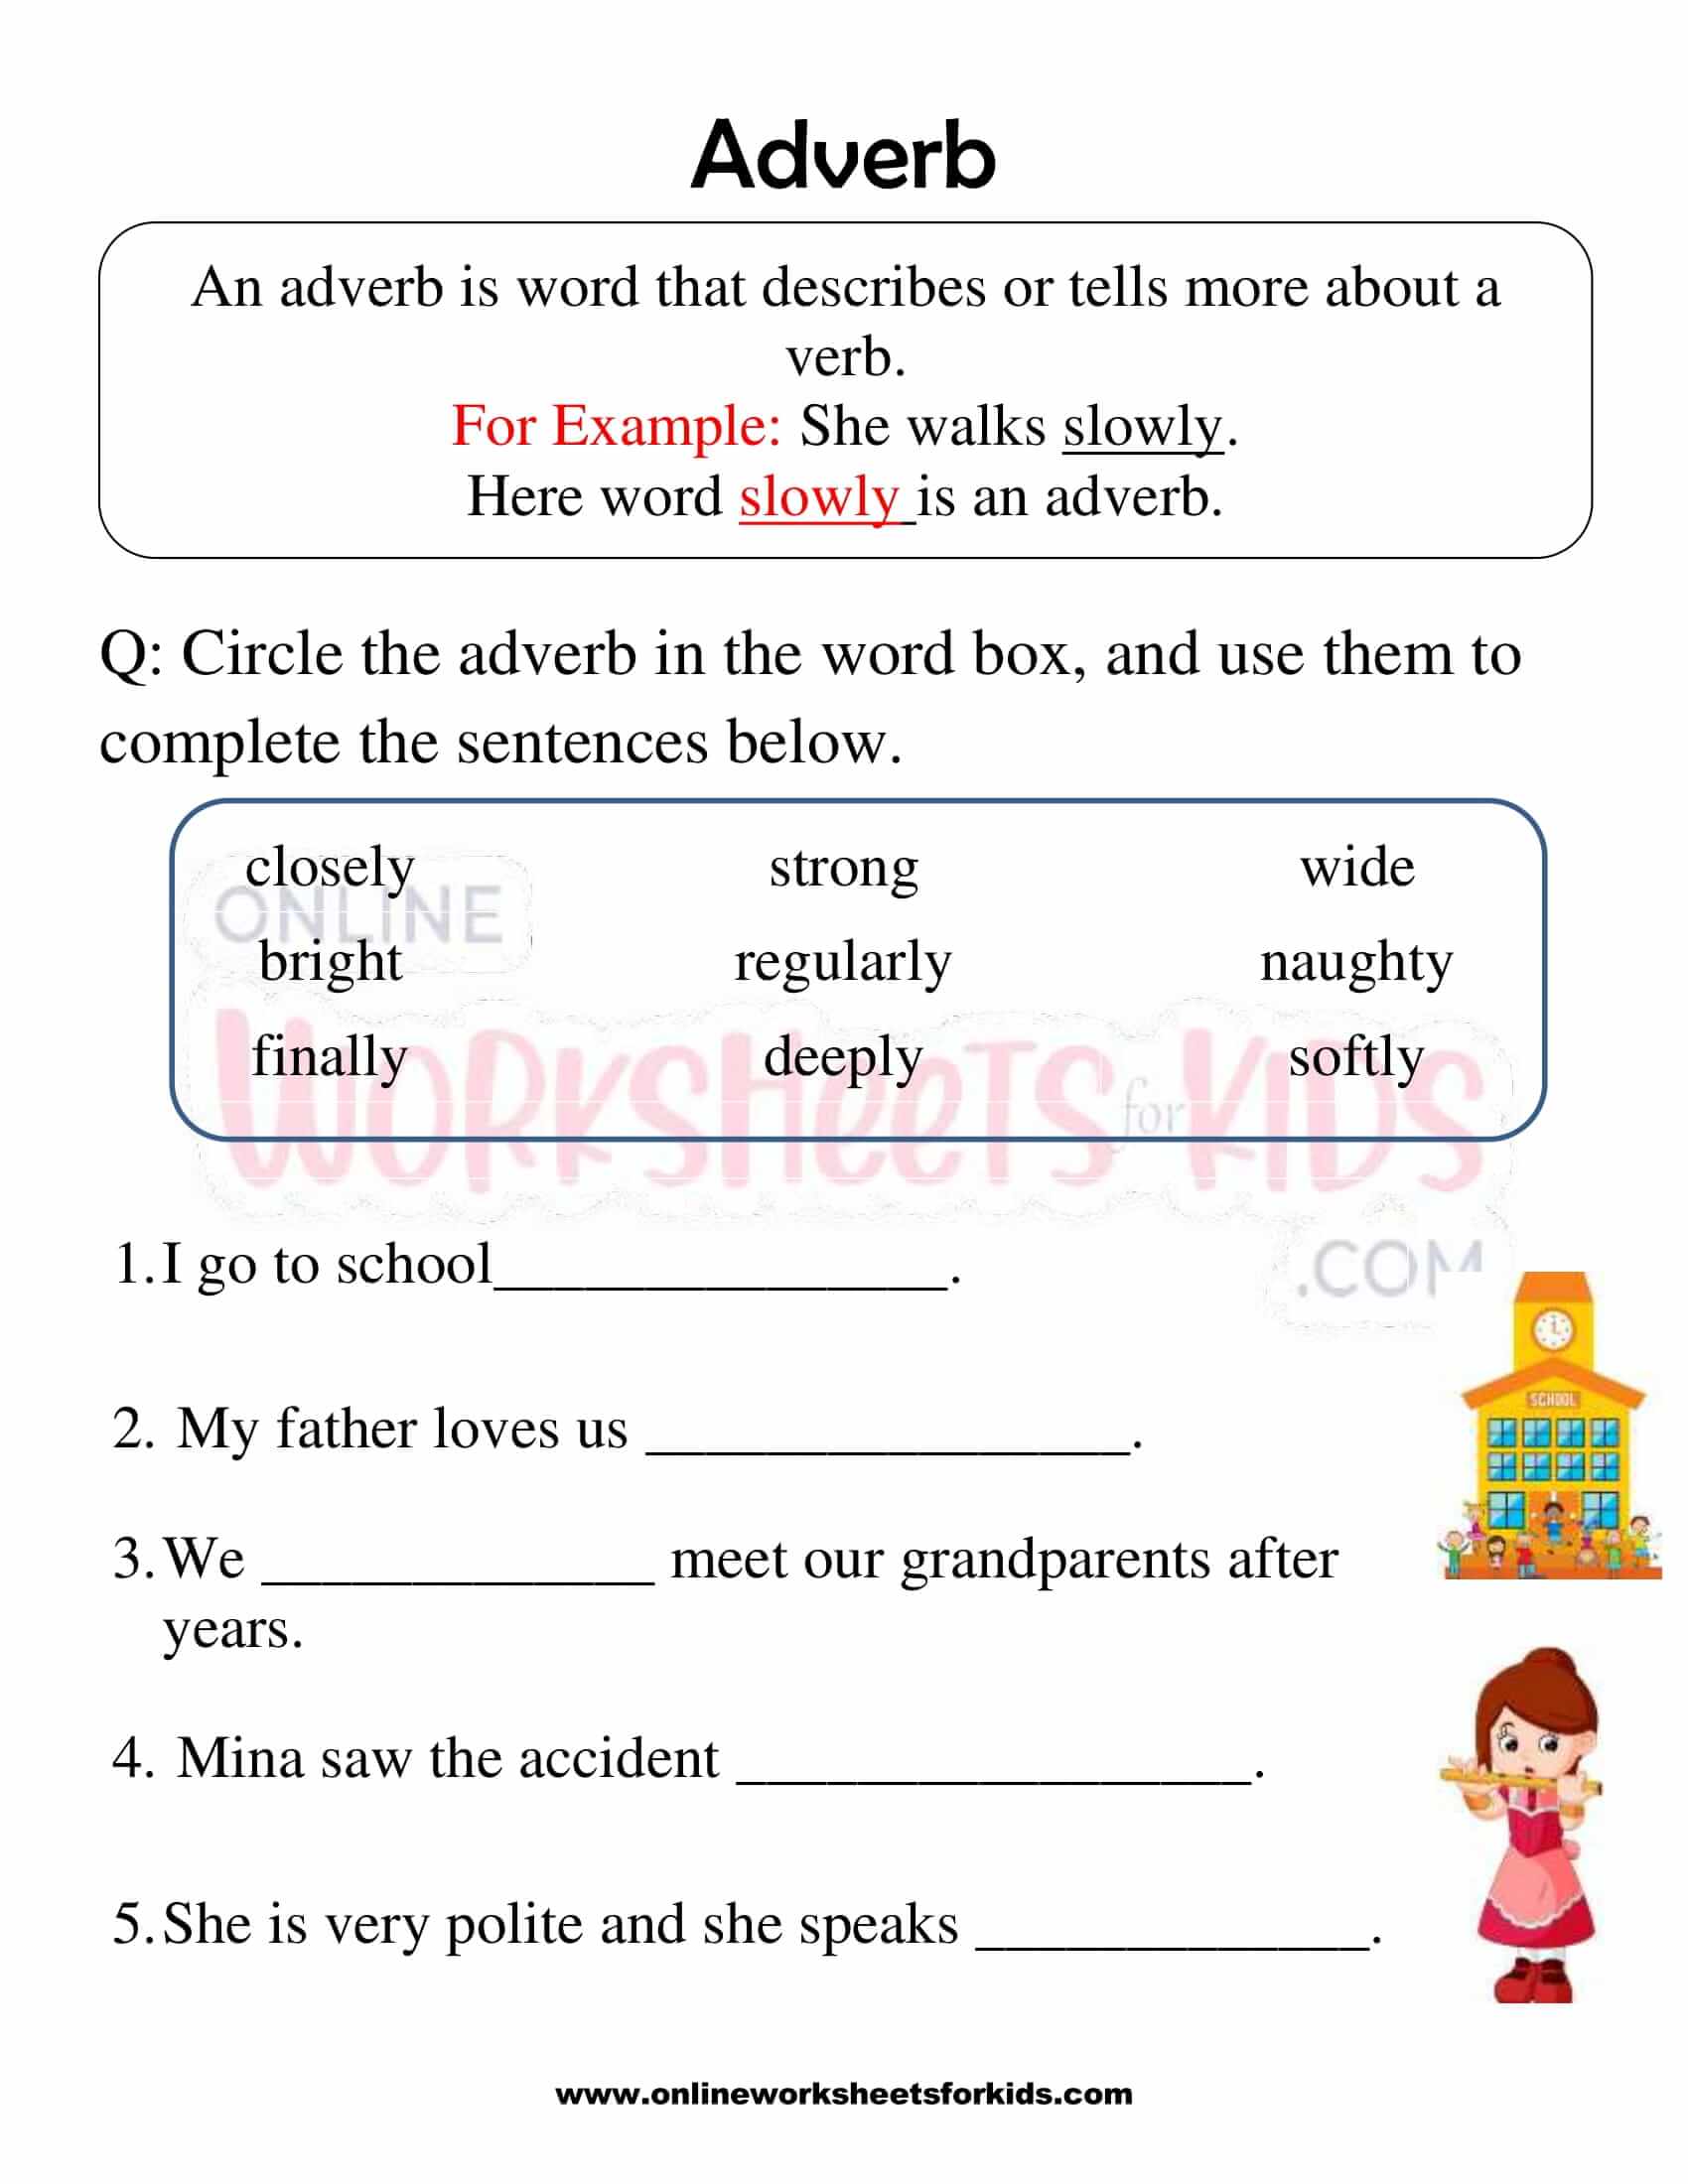 adverb-worksheet-for-grade-1-4